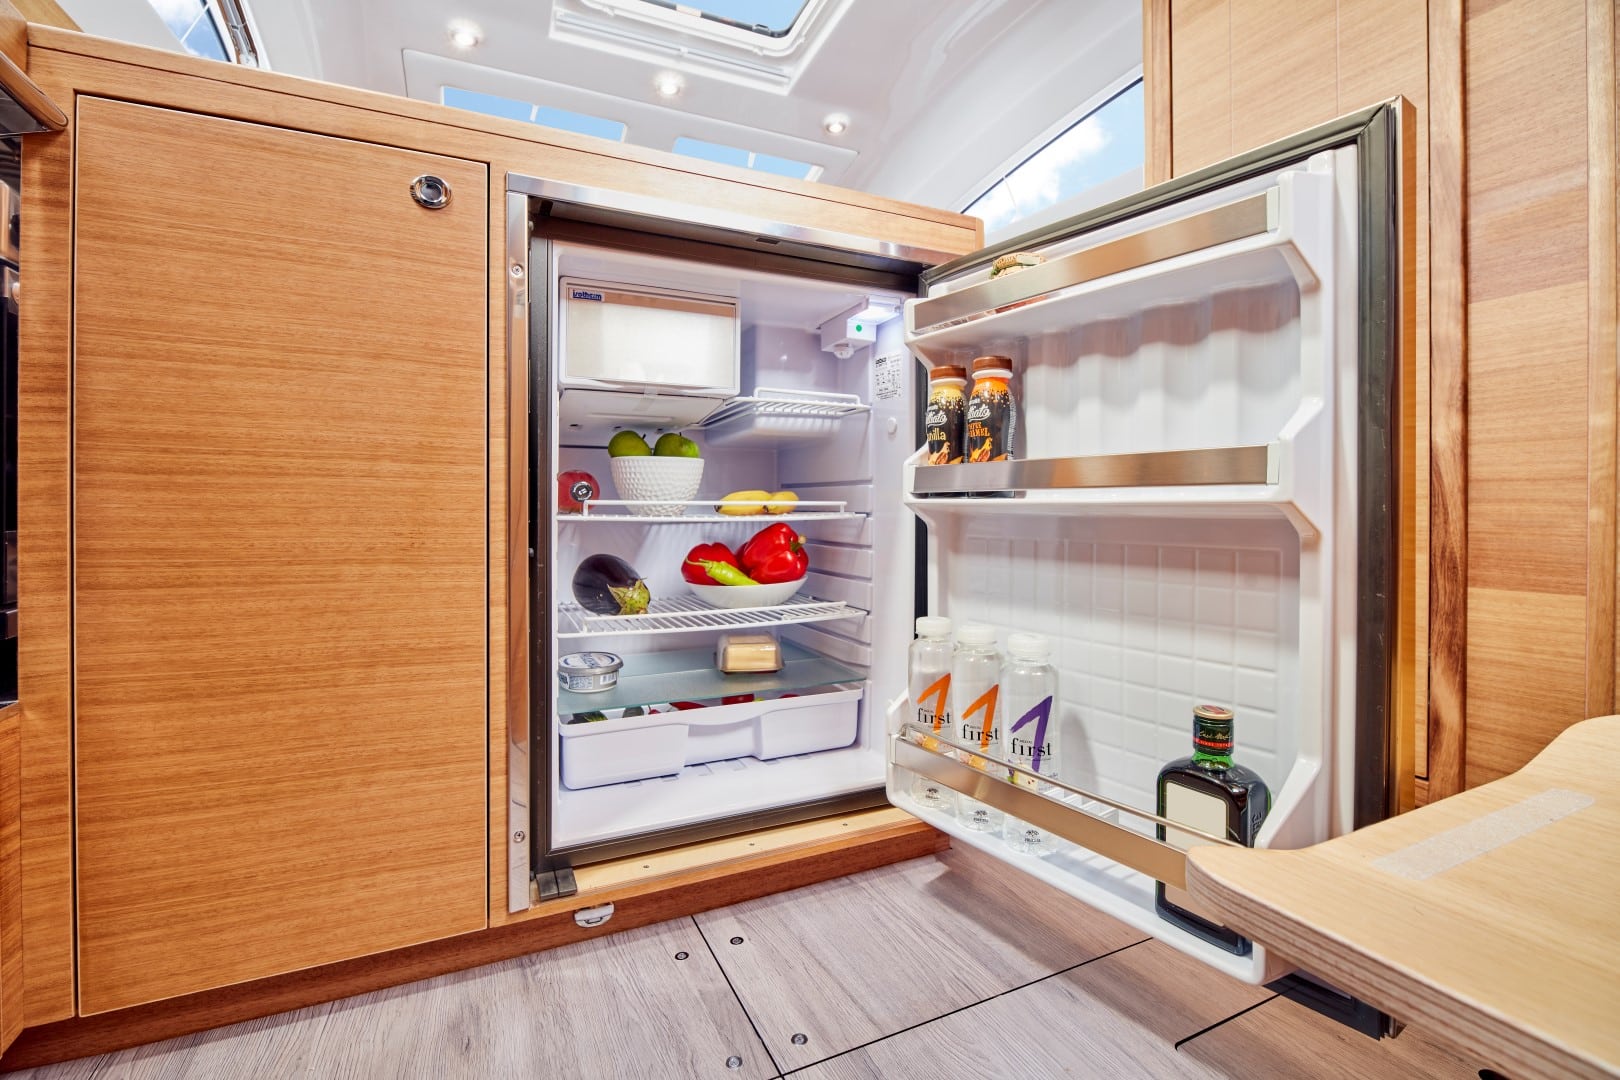 Offener Kühlschrank gefüllt mit Lebensmitteln wie Obst und Getränken, eingebaut in einem Holzschrank im gut beleuchteten, modernen Innenraum einer Segelyacht.